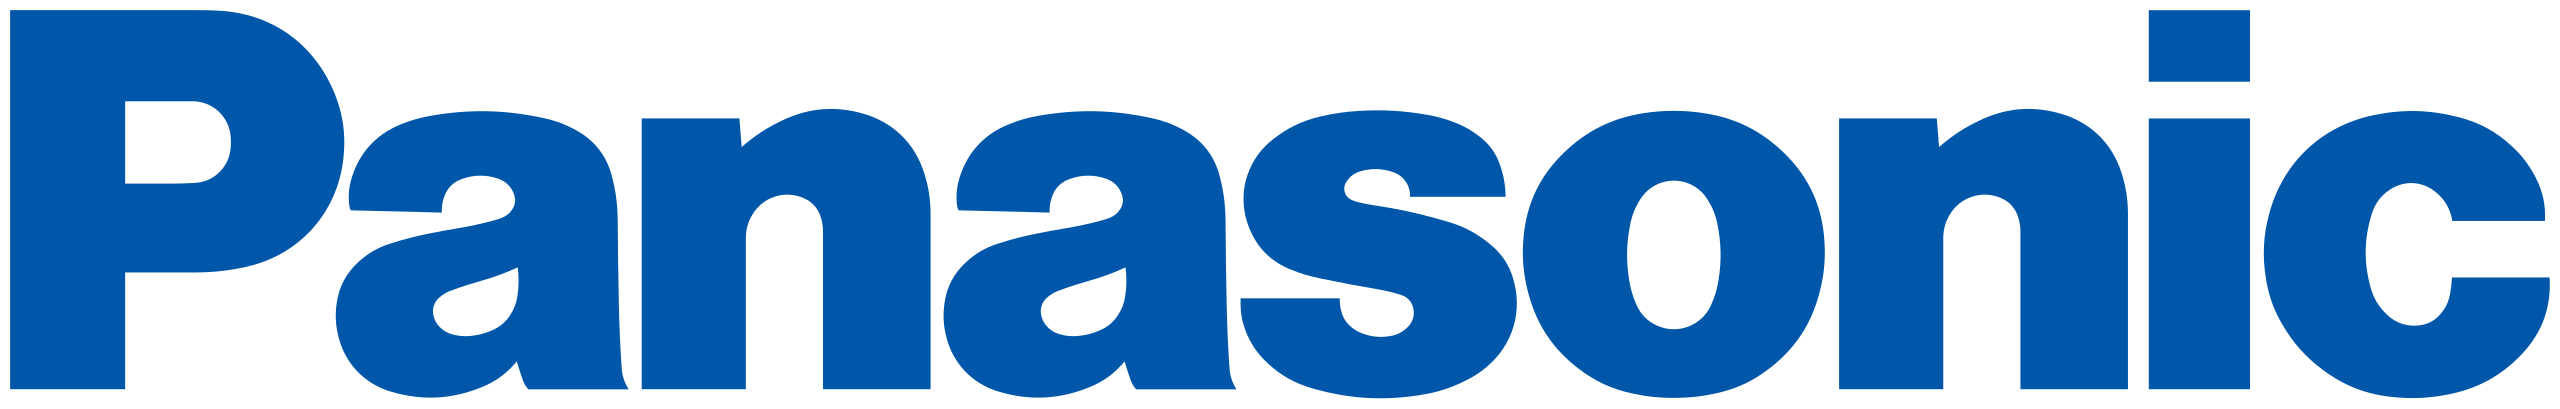 File:Panasonic logo (Blue).svg - Wikipedia